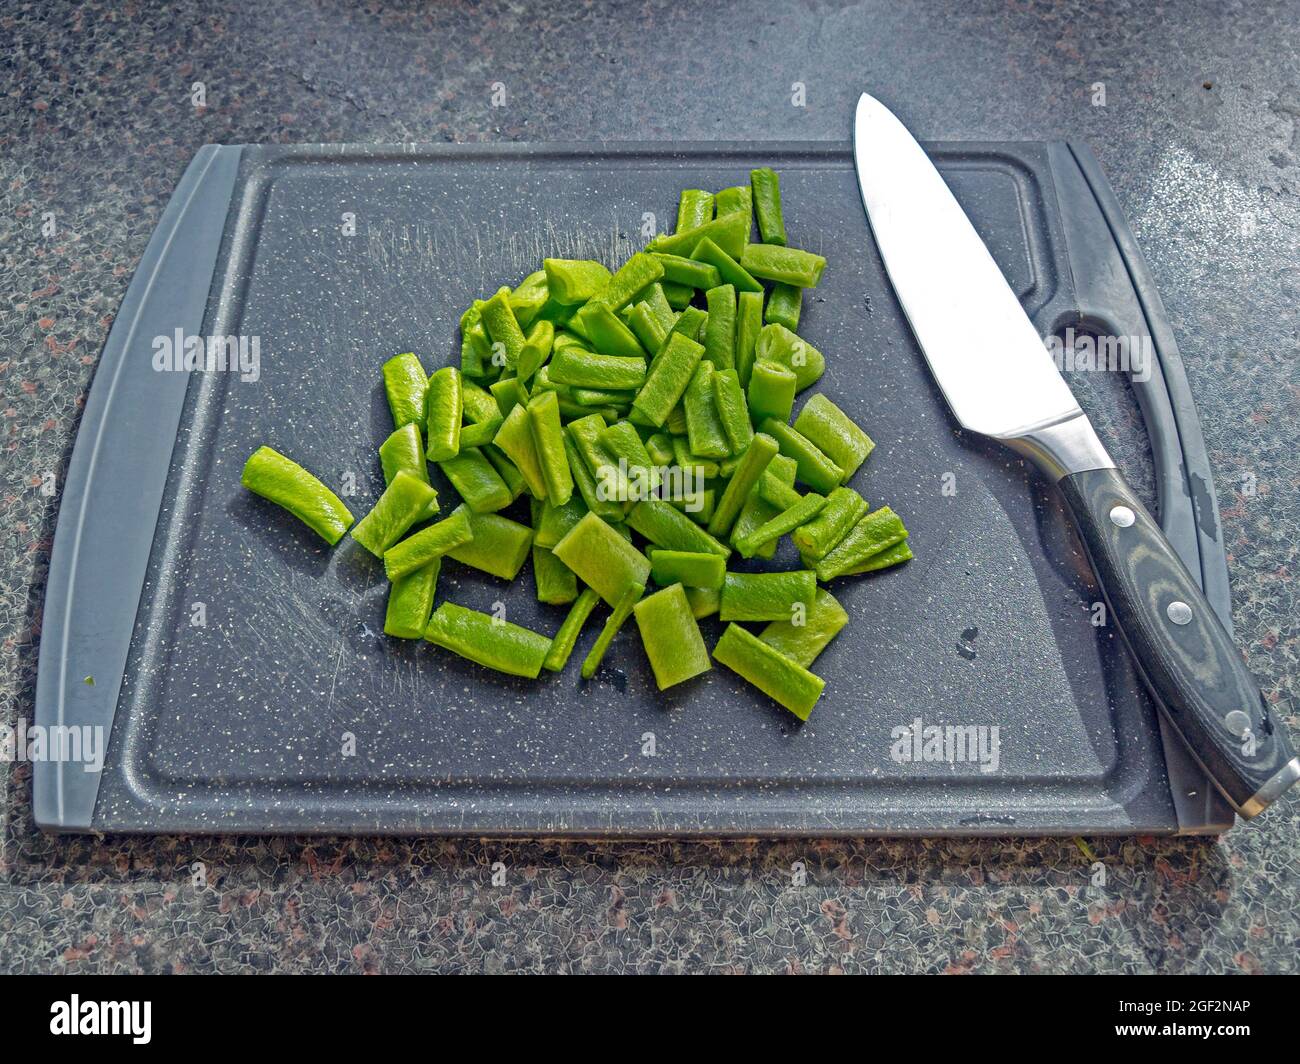 Granos de colada picados con un cuchillo de chef en una tabla de cortar Foto de stock